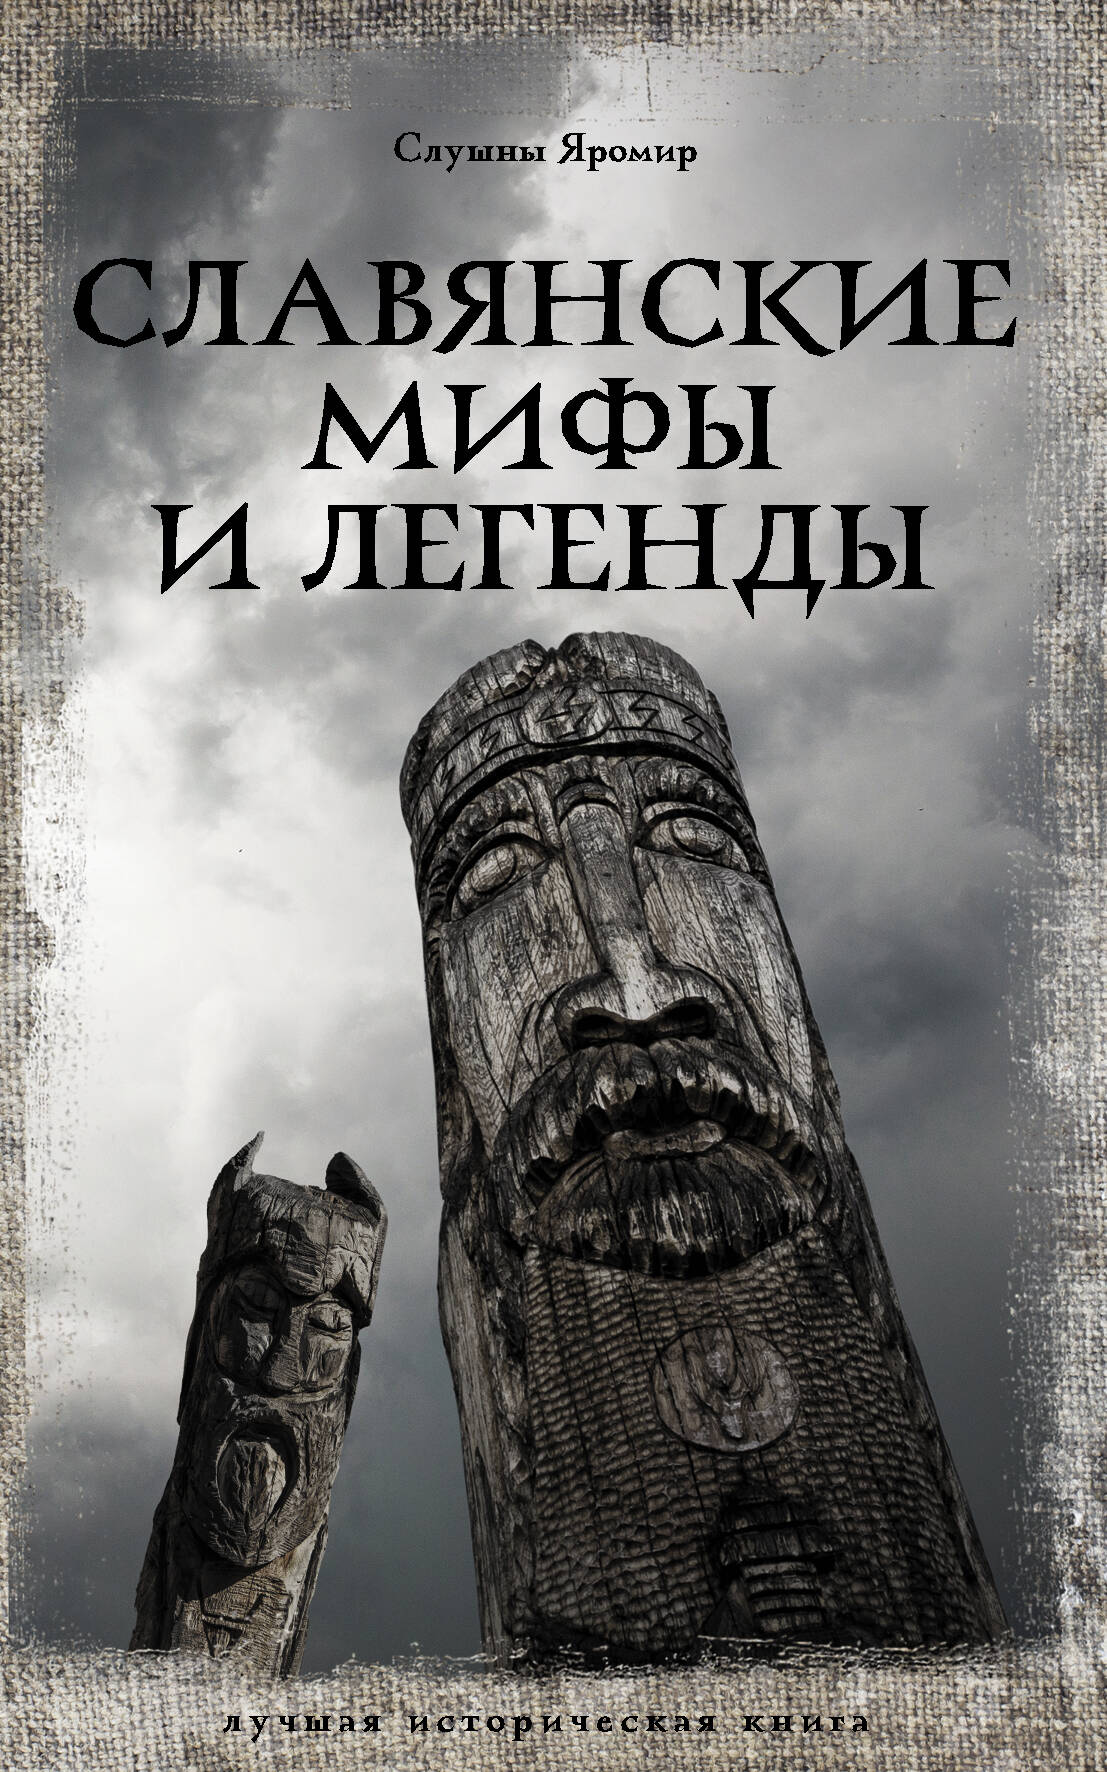 Слушны Яромир - Славянские мифы и легенды